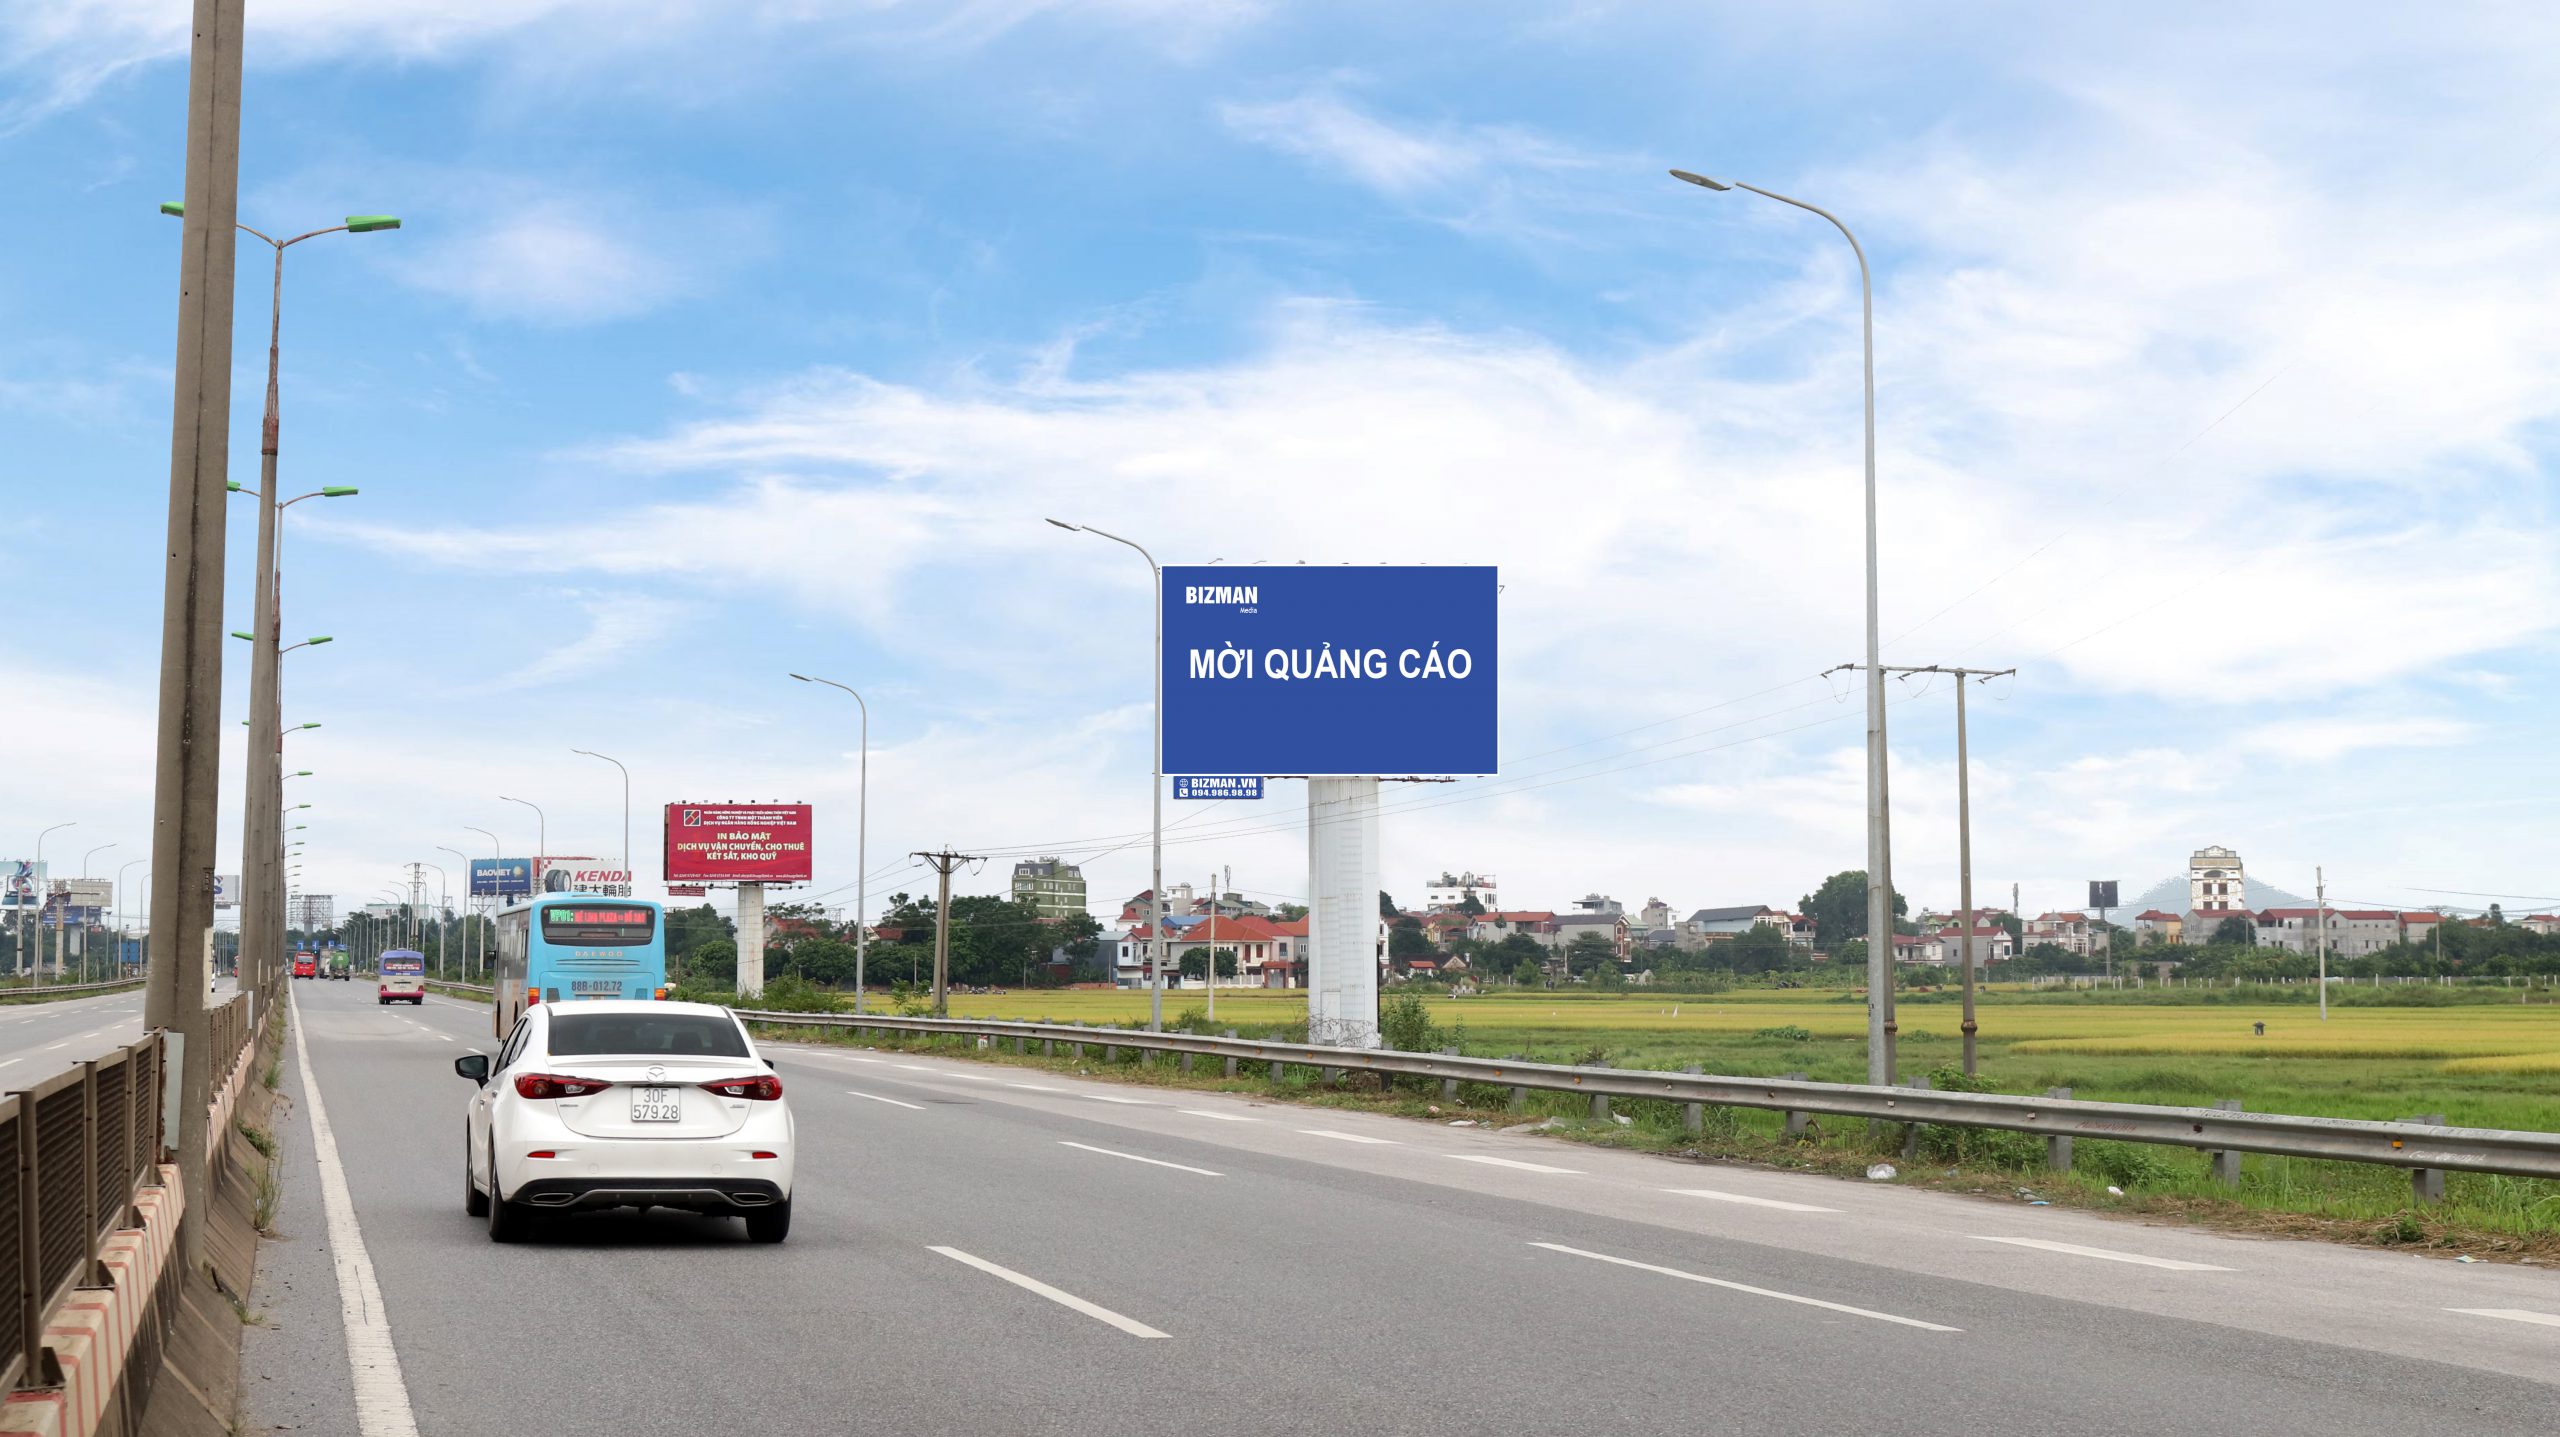 Bảng quảng cáo cao tốc – Võ Văn Kiệt – Hà Nội – 31A